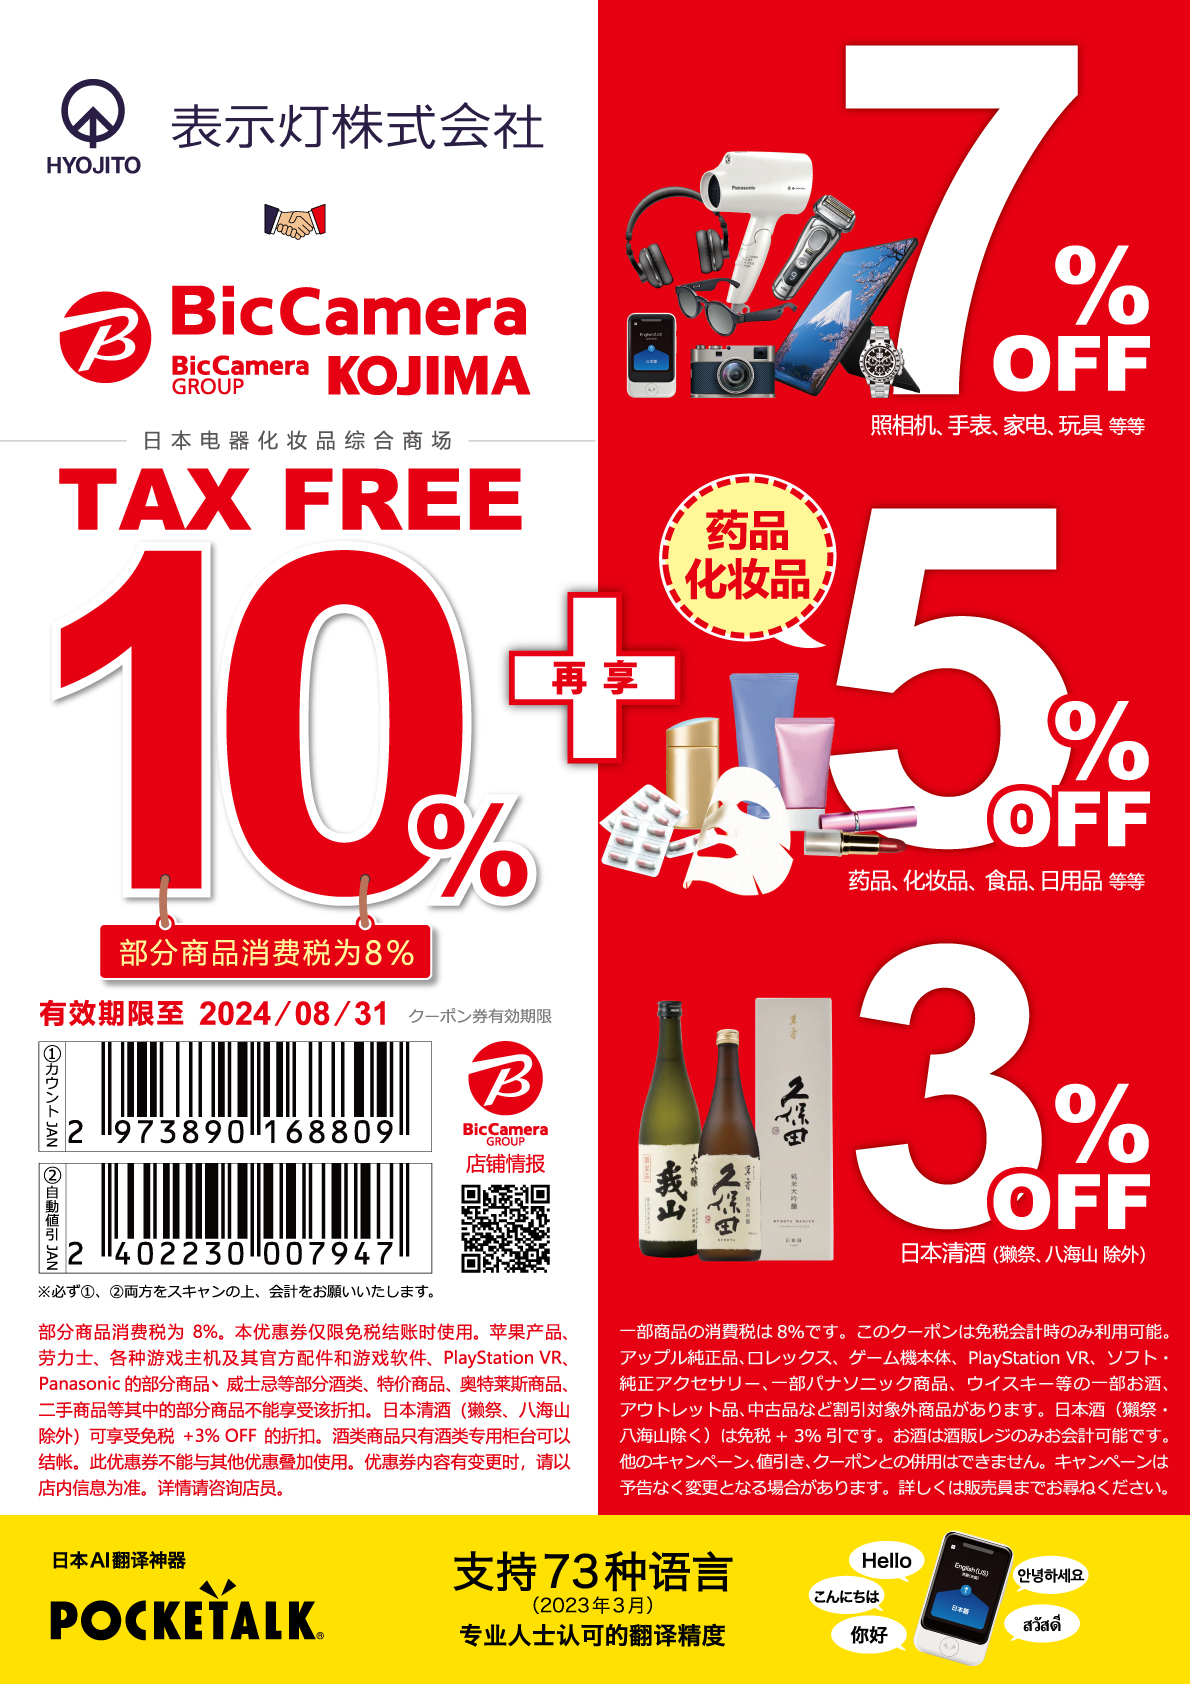 bic-camera-taxfreeshops-jp